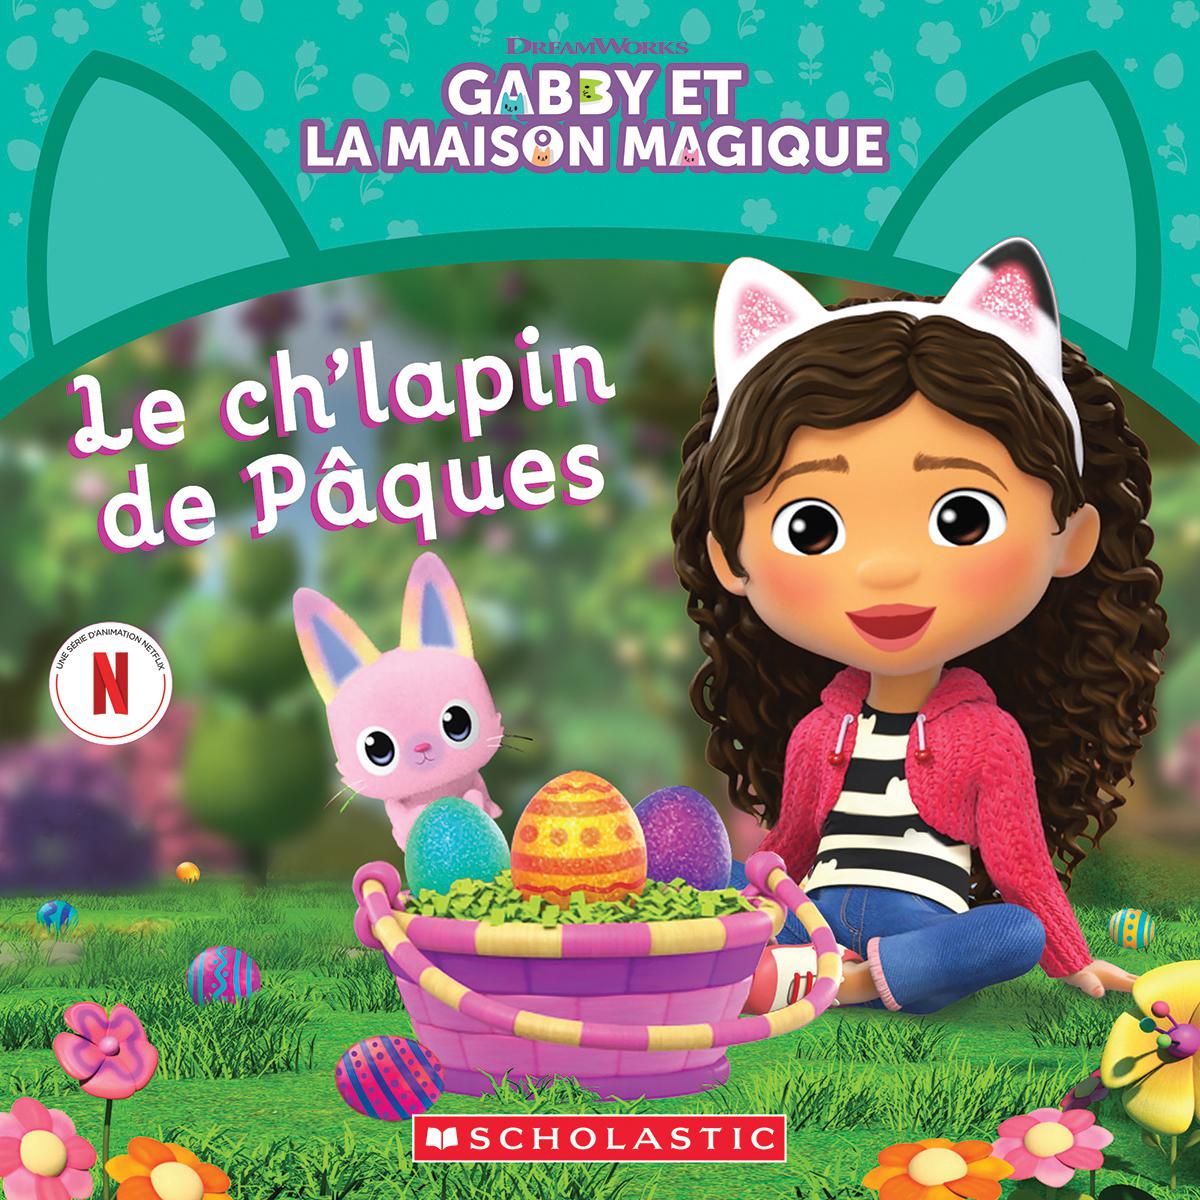  Gabby et la maison magique : Le ch'lapin de Pâques 